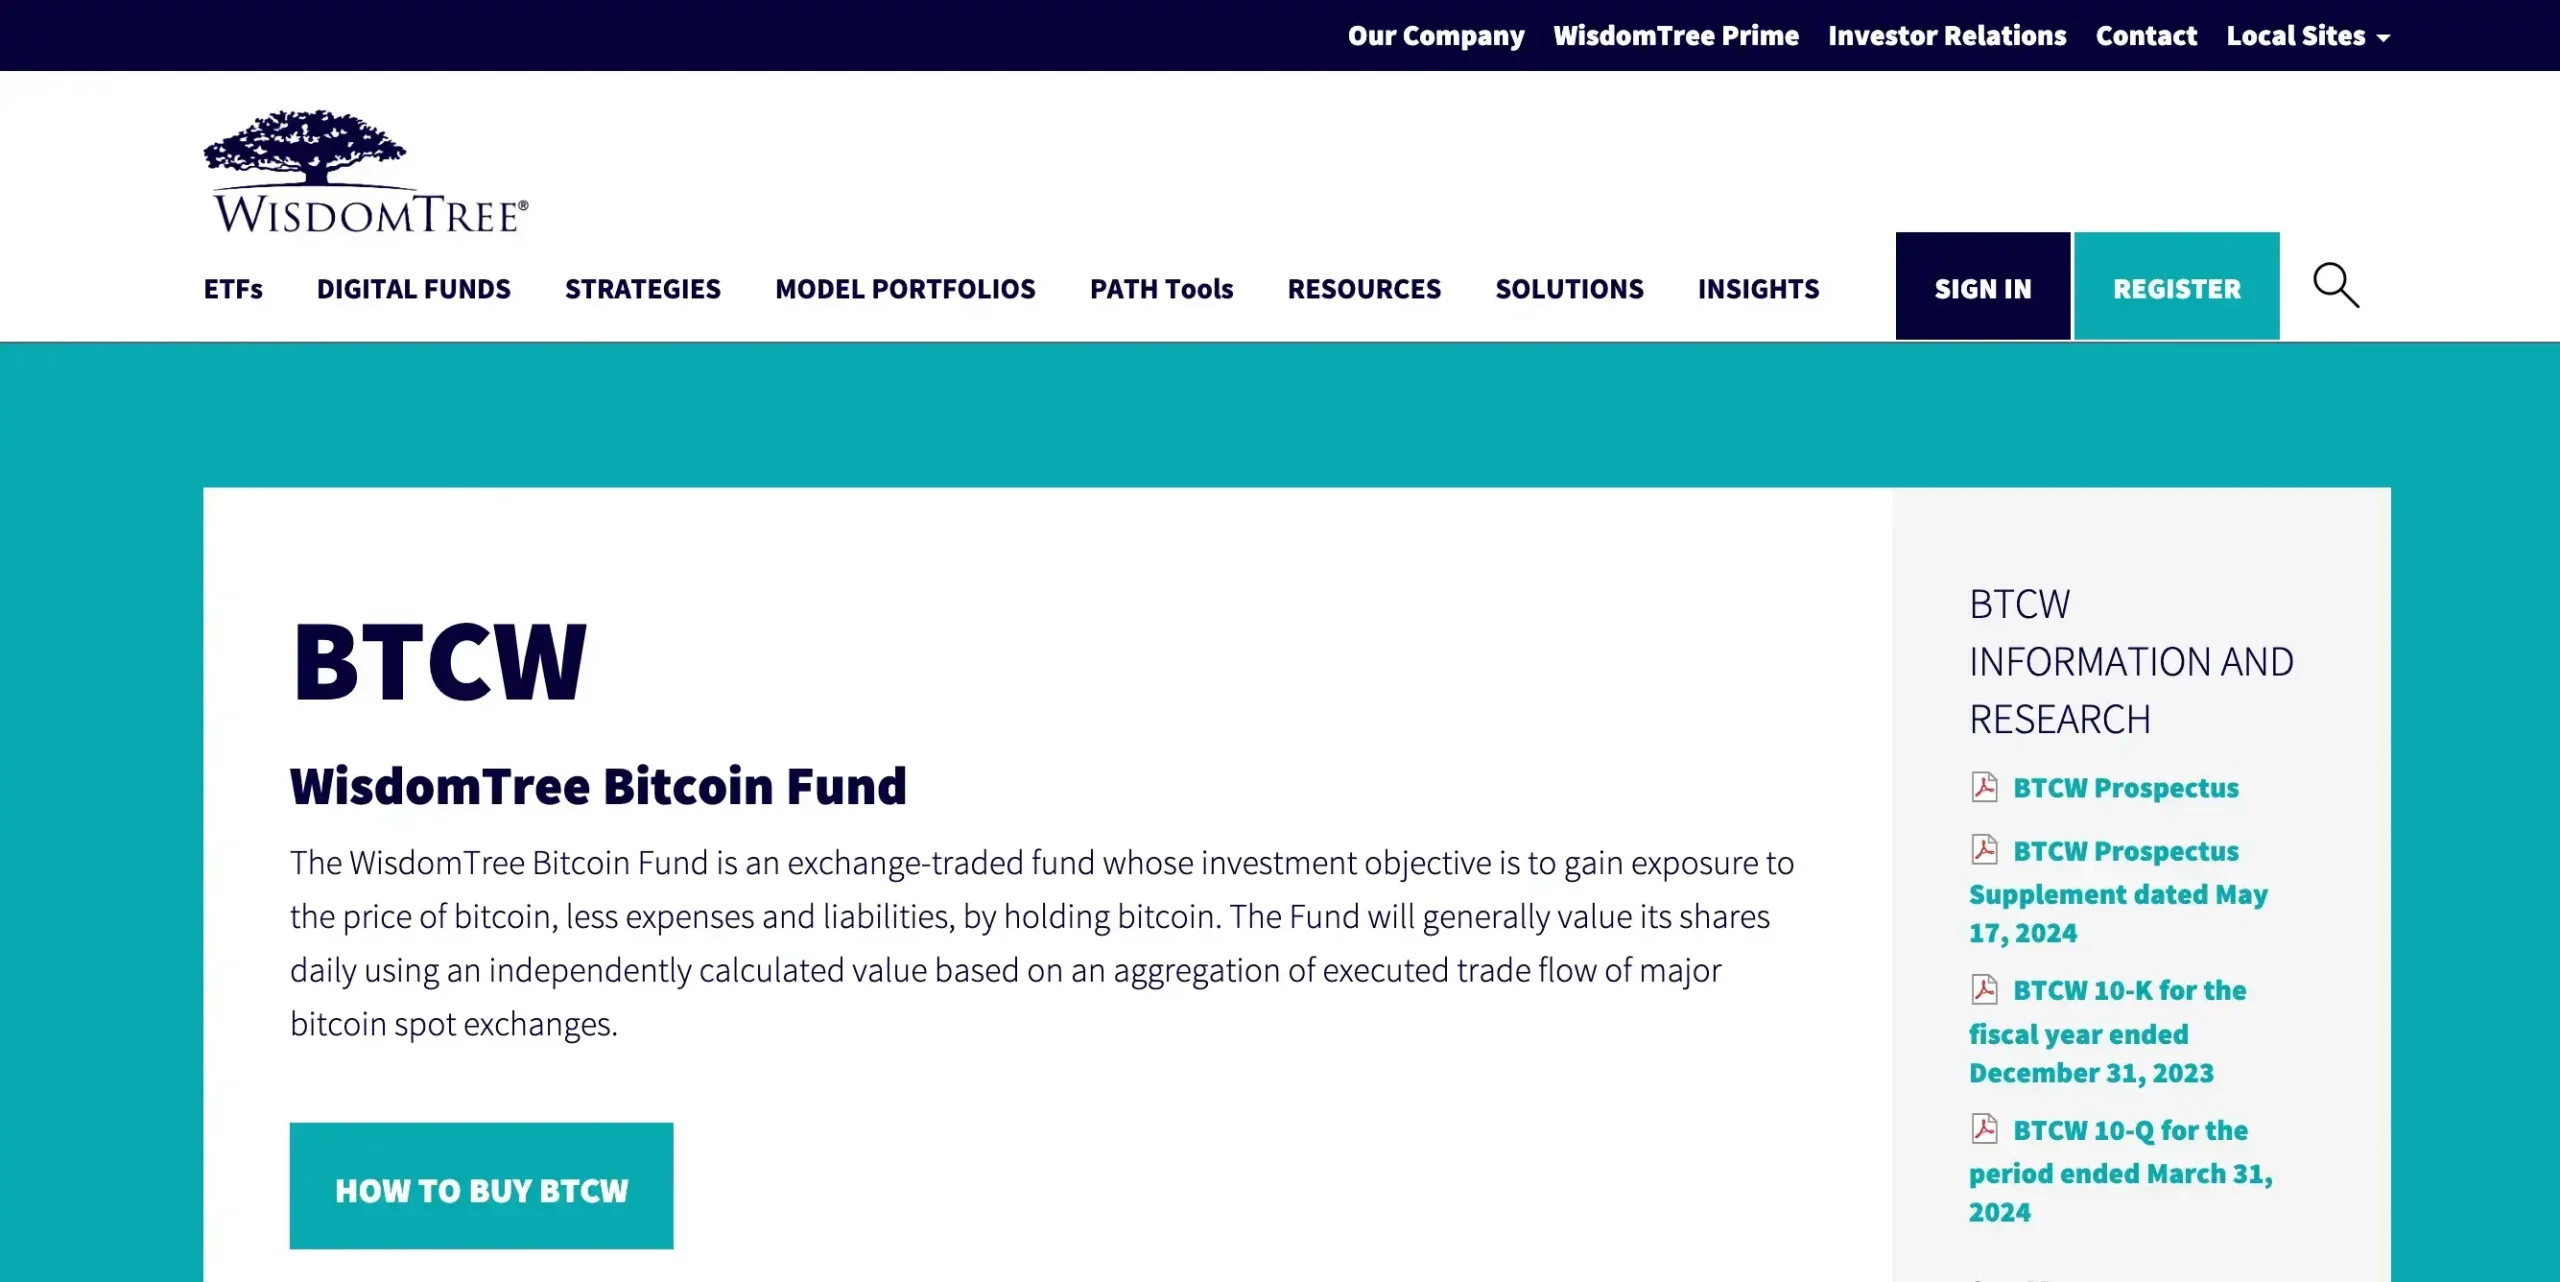 9. WisdomTree Bitcoin Fund (BTCW)